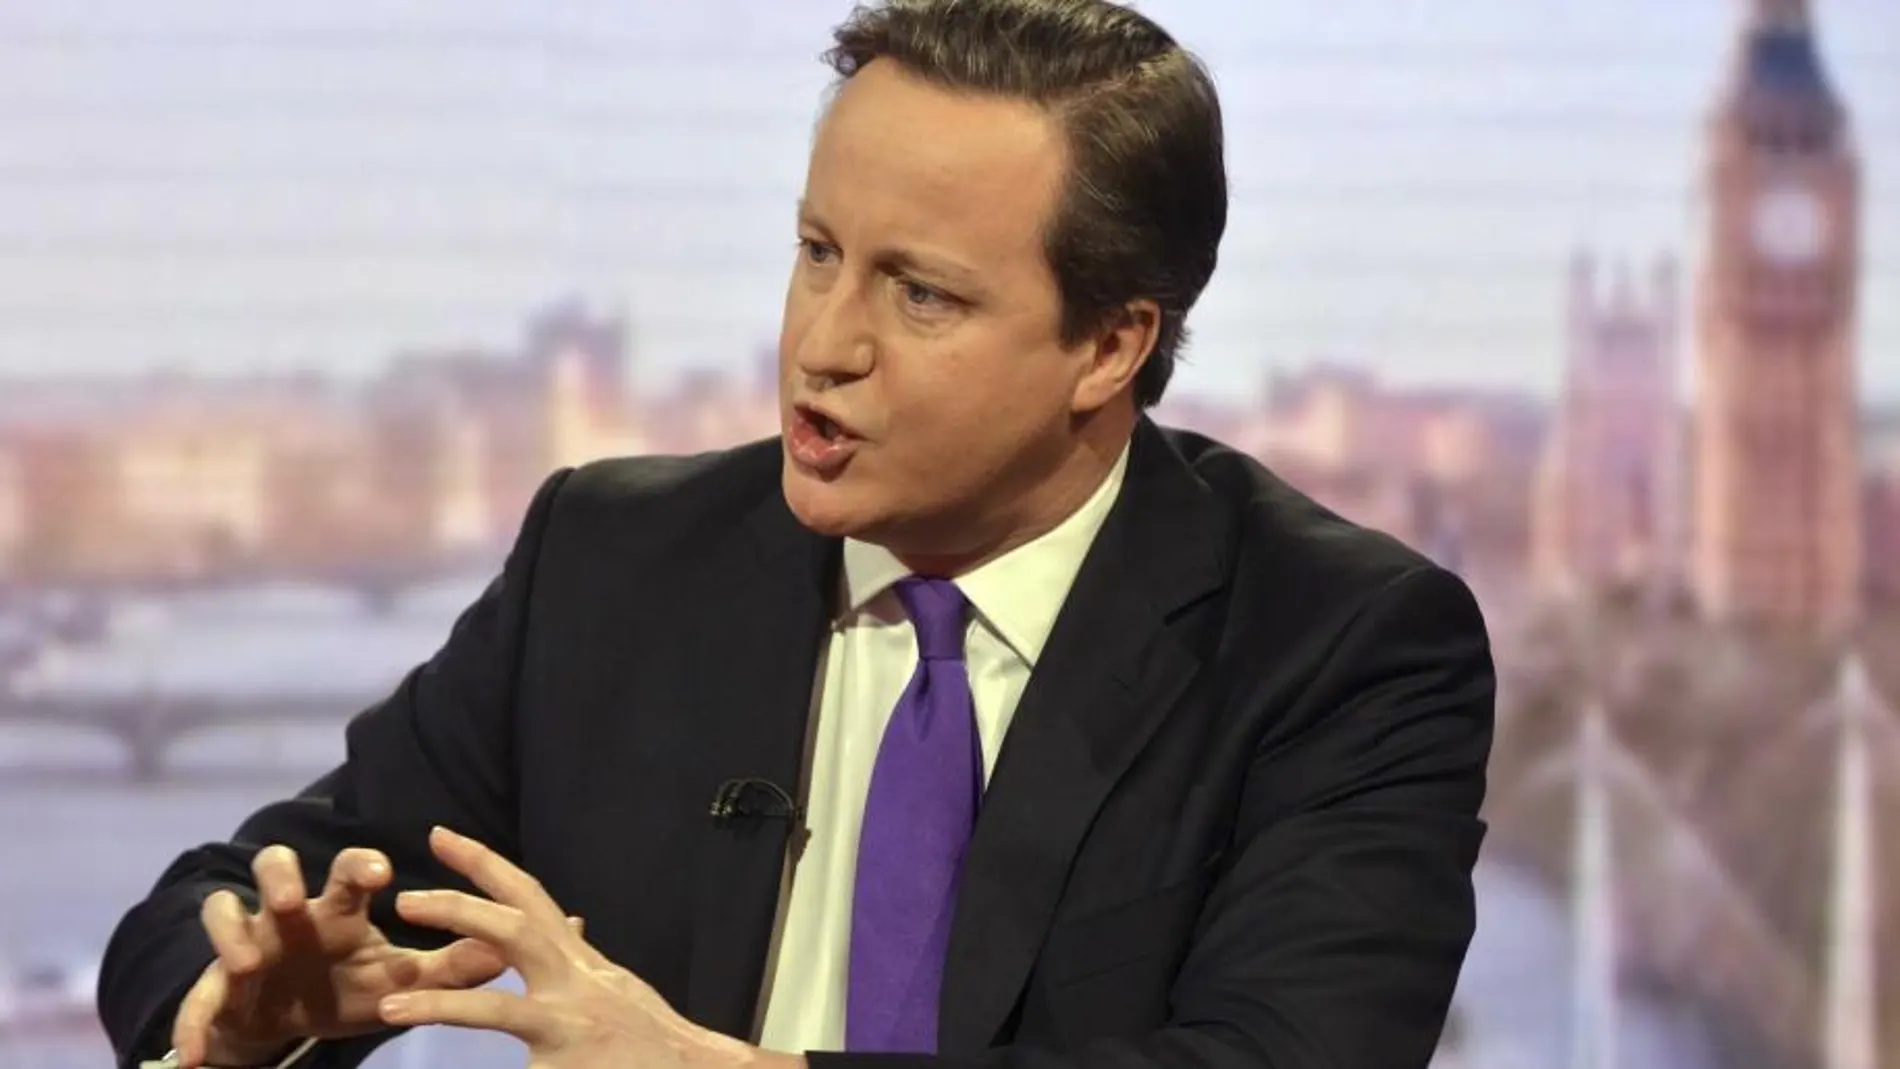 El primer ministro británico, David Cameron, durante la entrevista a la BBC